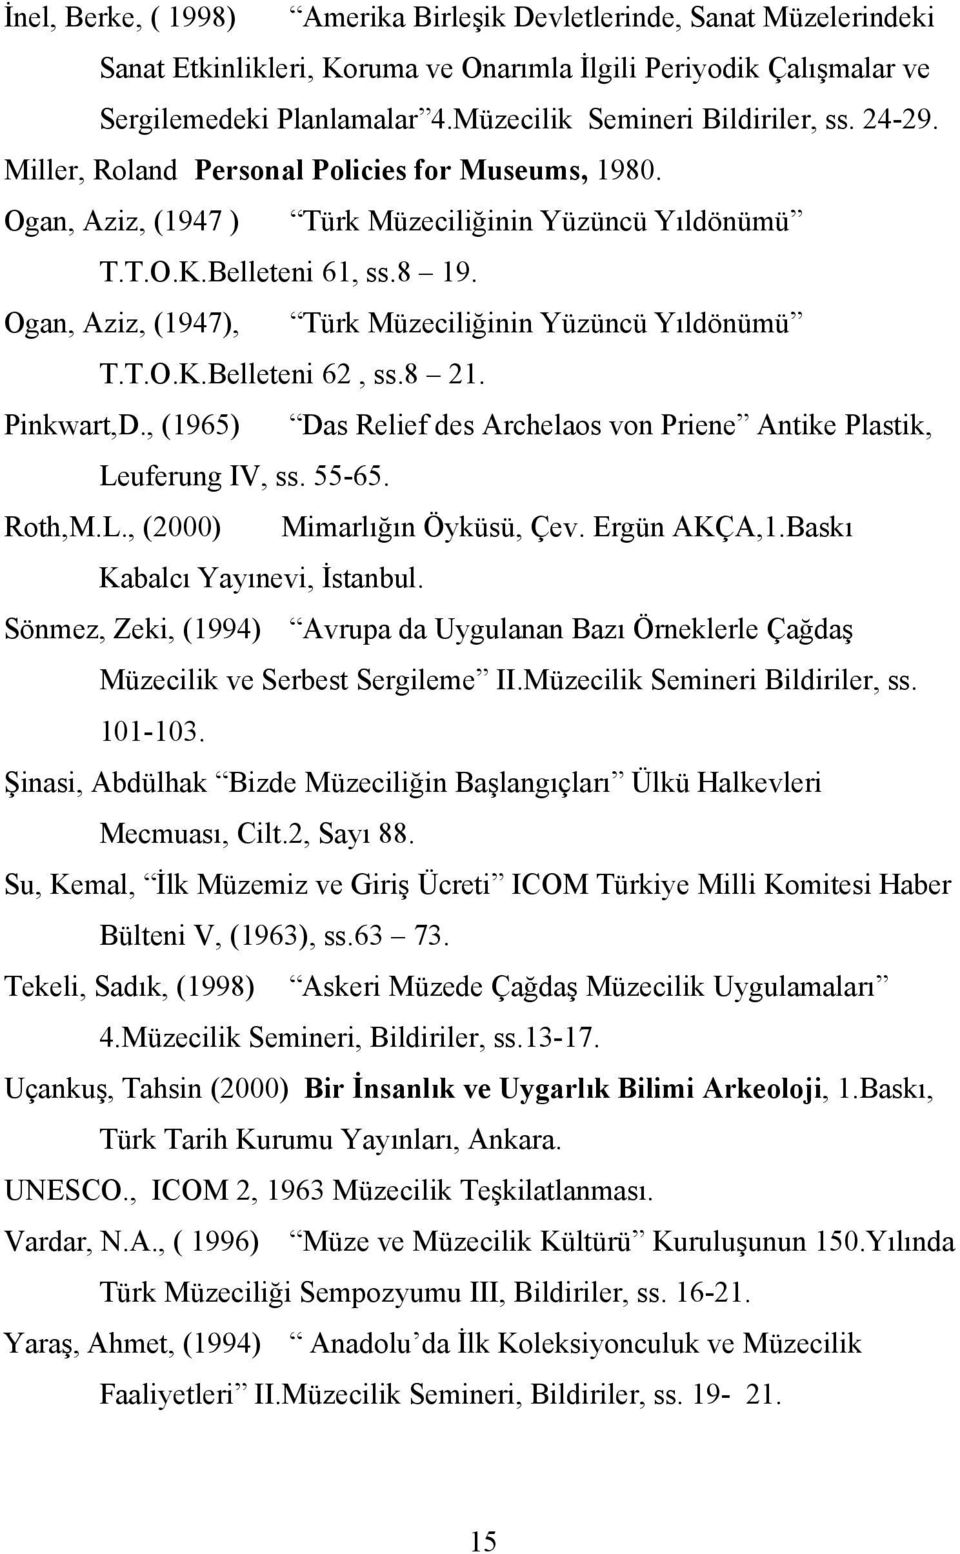 Ogan, Aziz, (1947), Türk Müzeciliğinin Yüzüncü Yıldönümü T.T.O.K.Belleteni 62, ss.8 21. Pinkwart,D., (1965) Das Relief des Archelaos von Priene Antike Plastik, Leuferung IV, ss. 55-65. Roth,M.L., (2000) Mimarlığın Öyküsü, Çev.